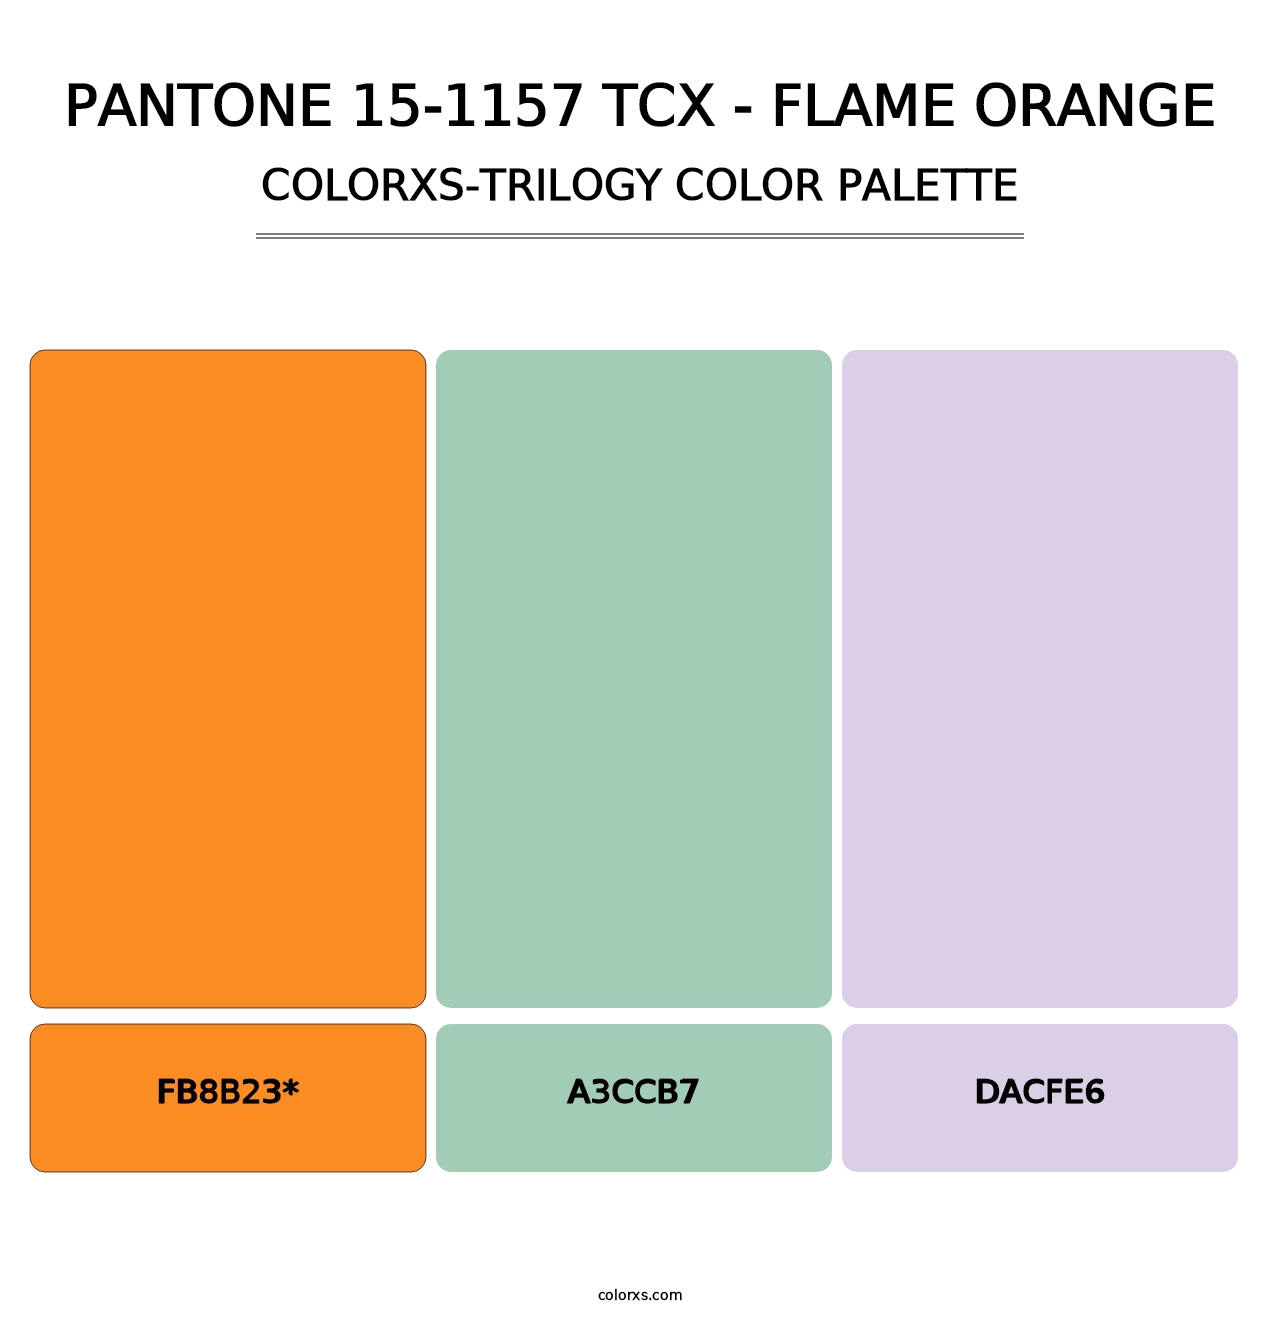 PANTONE 15-1157 TCX - Flame Orange - Colorxs Trilogy Palette